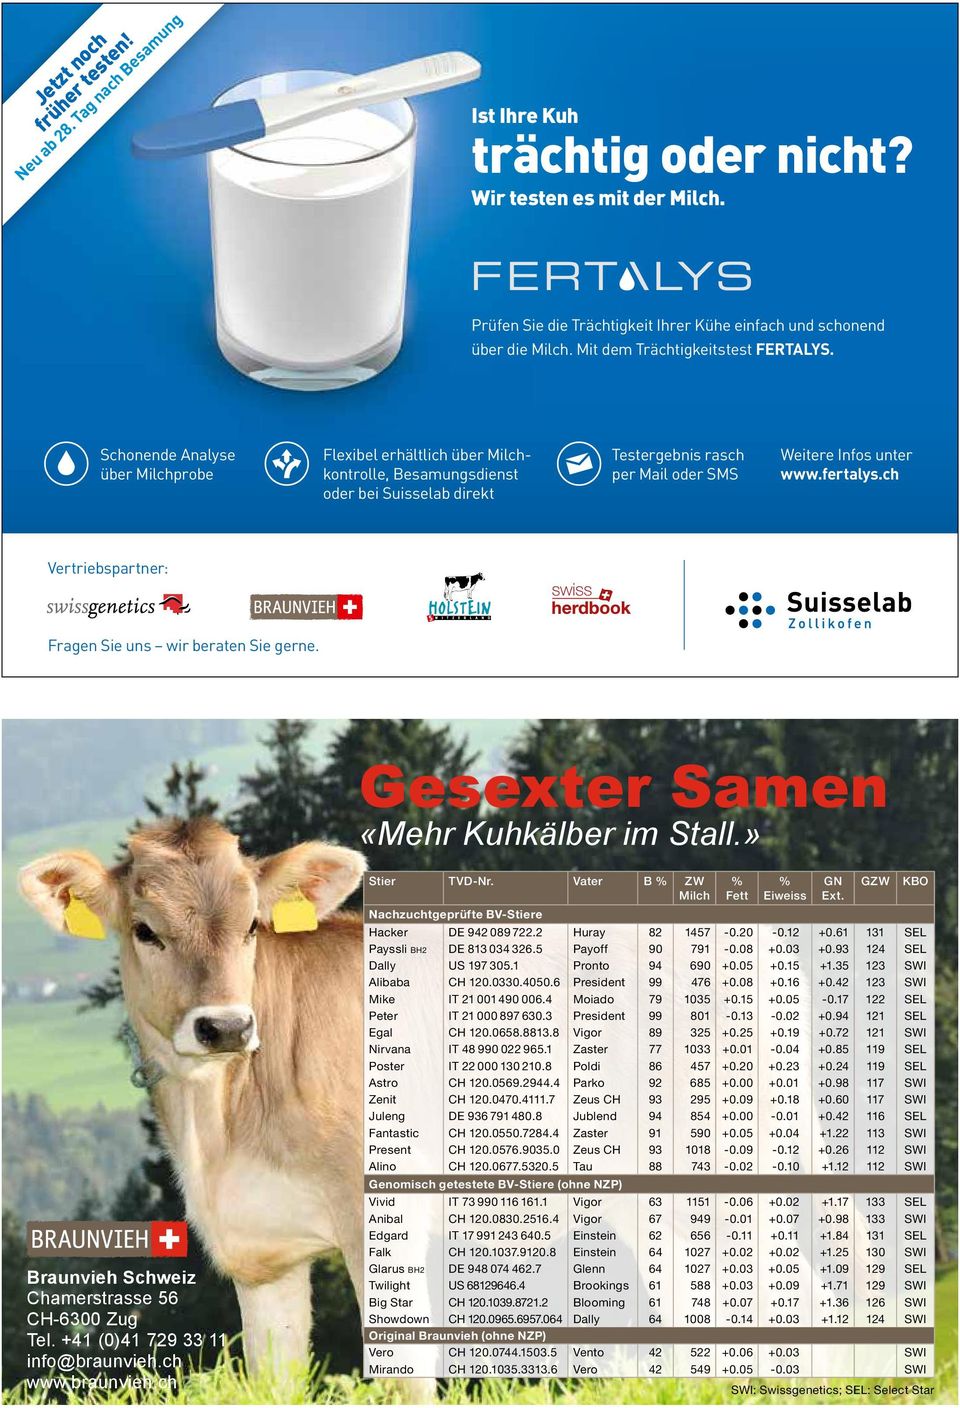 Schonende Analyse über Milchprobe Flexibel erhältlich über Milchkontrolle, Besamungsdienst oder bei Suisselab direkt Testergebnis rasch per Mail oder SMS Weitere Infos unter www.fertalys.